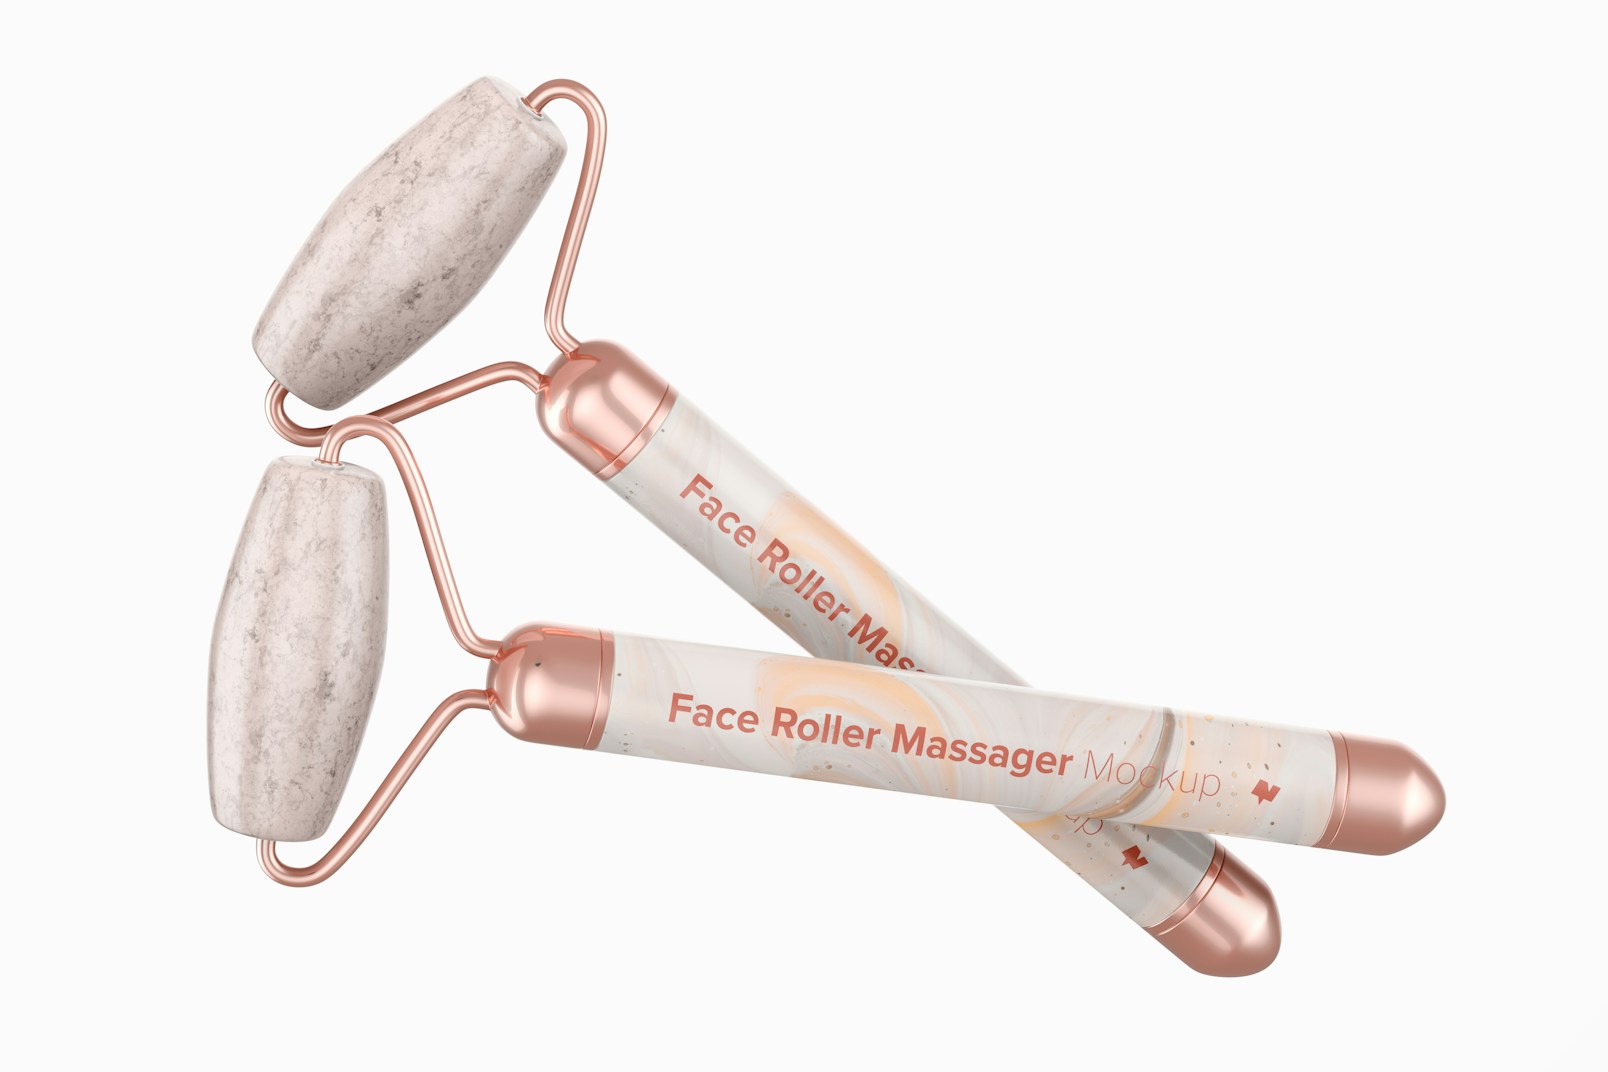 Face Roller Massagers Mockup, Floating